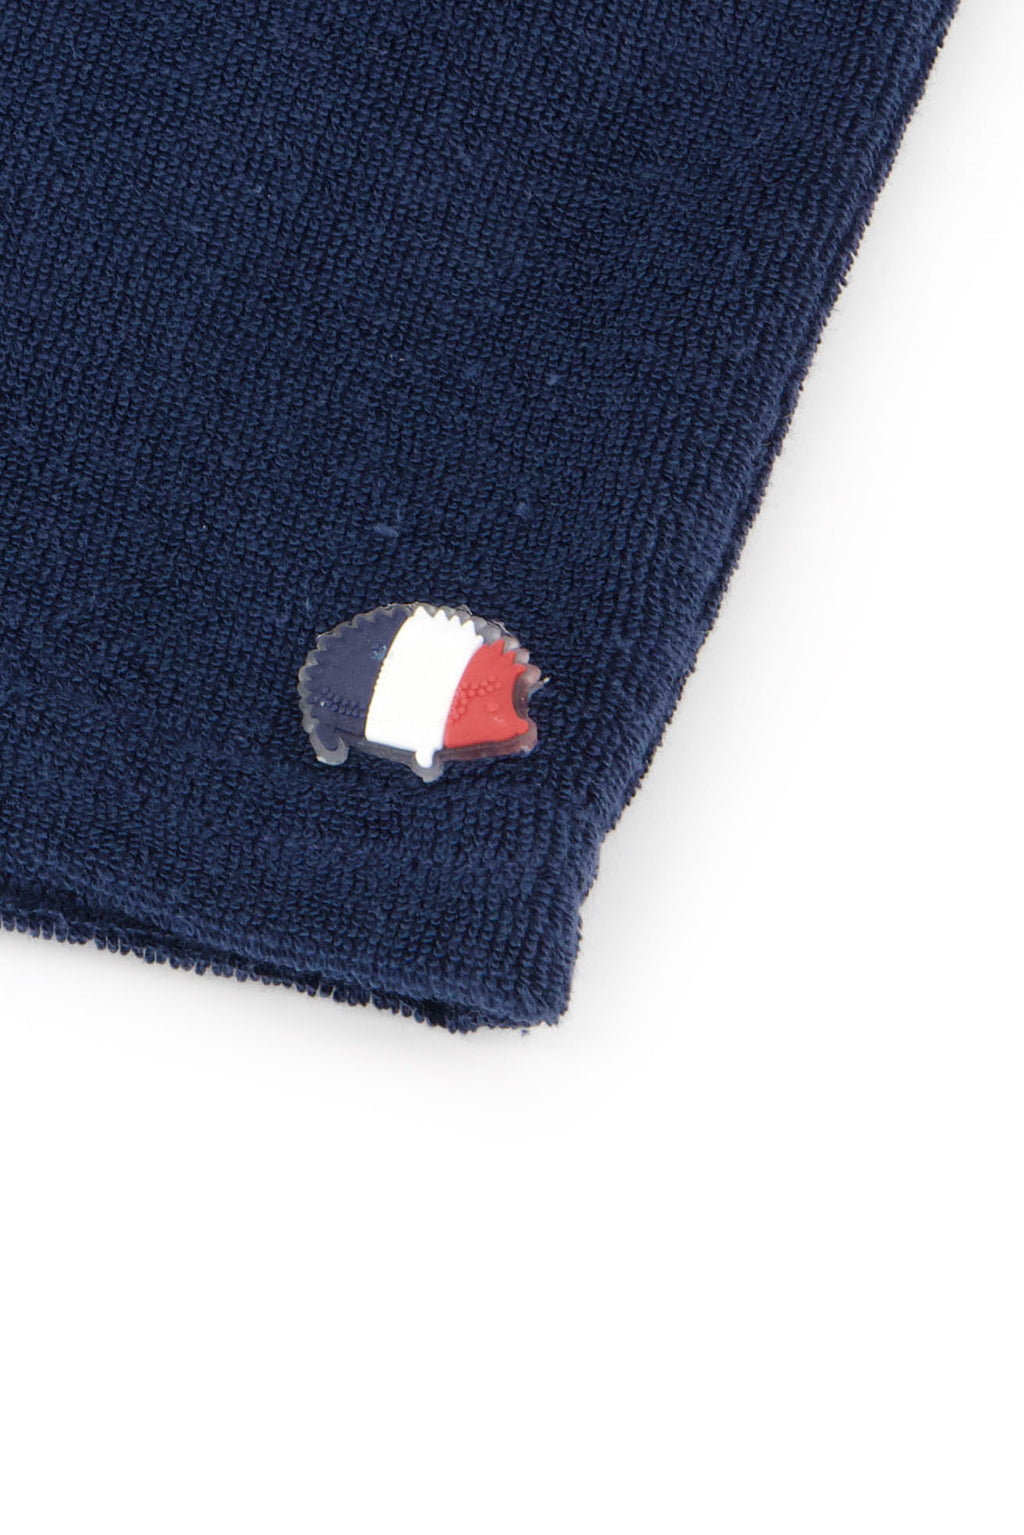 Kurze Hose - Marineblau Tricolor -Details